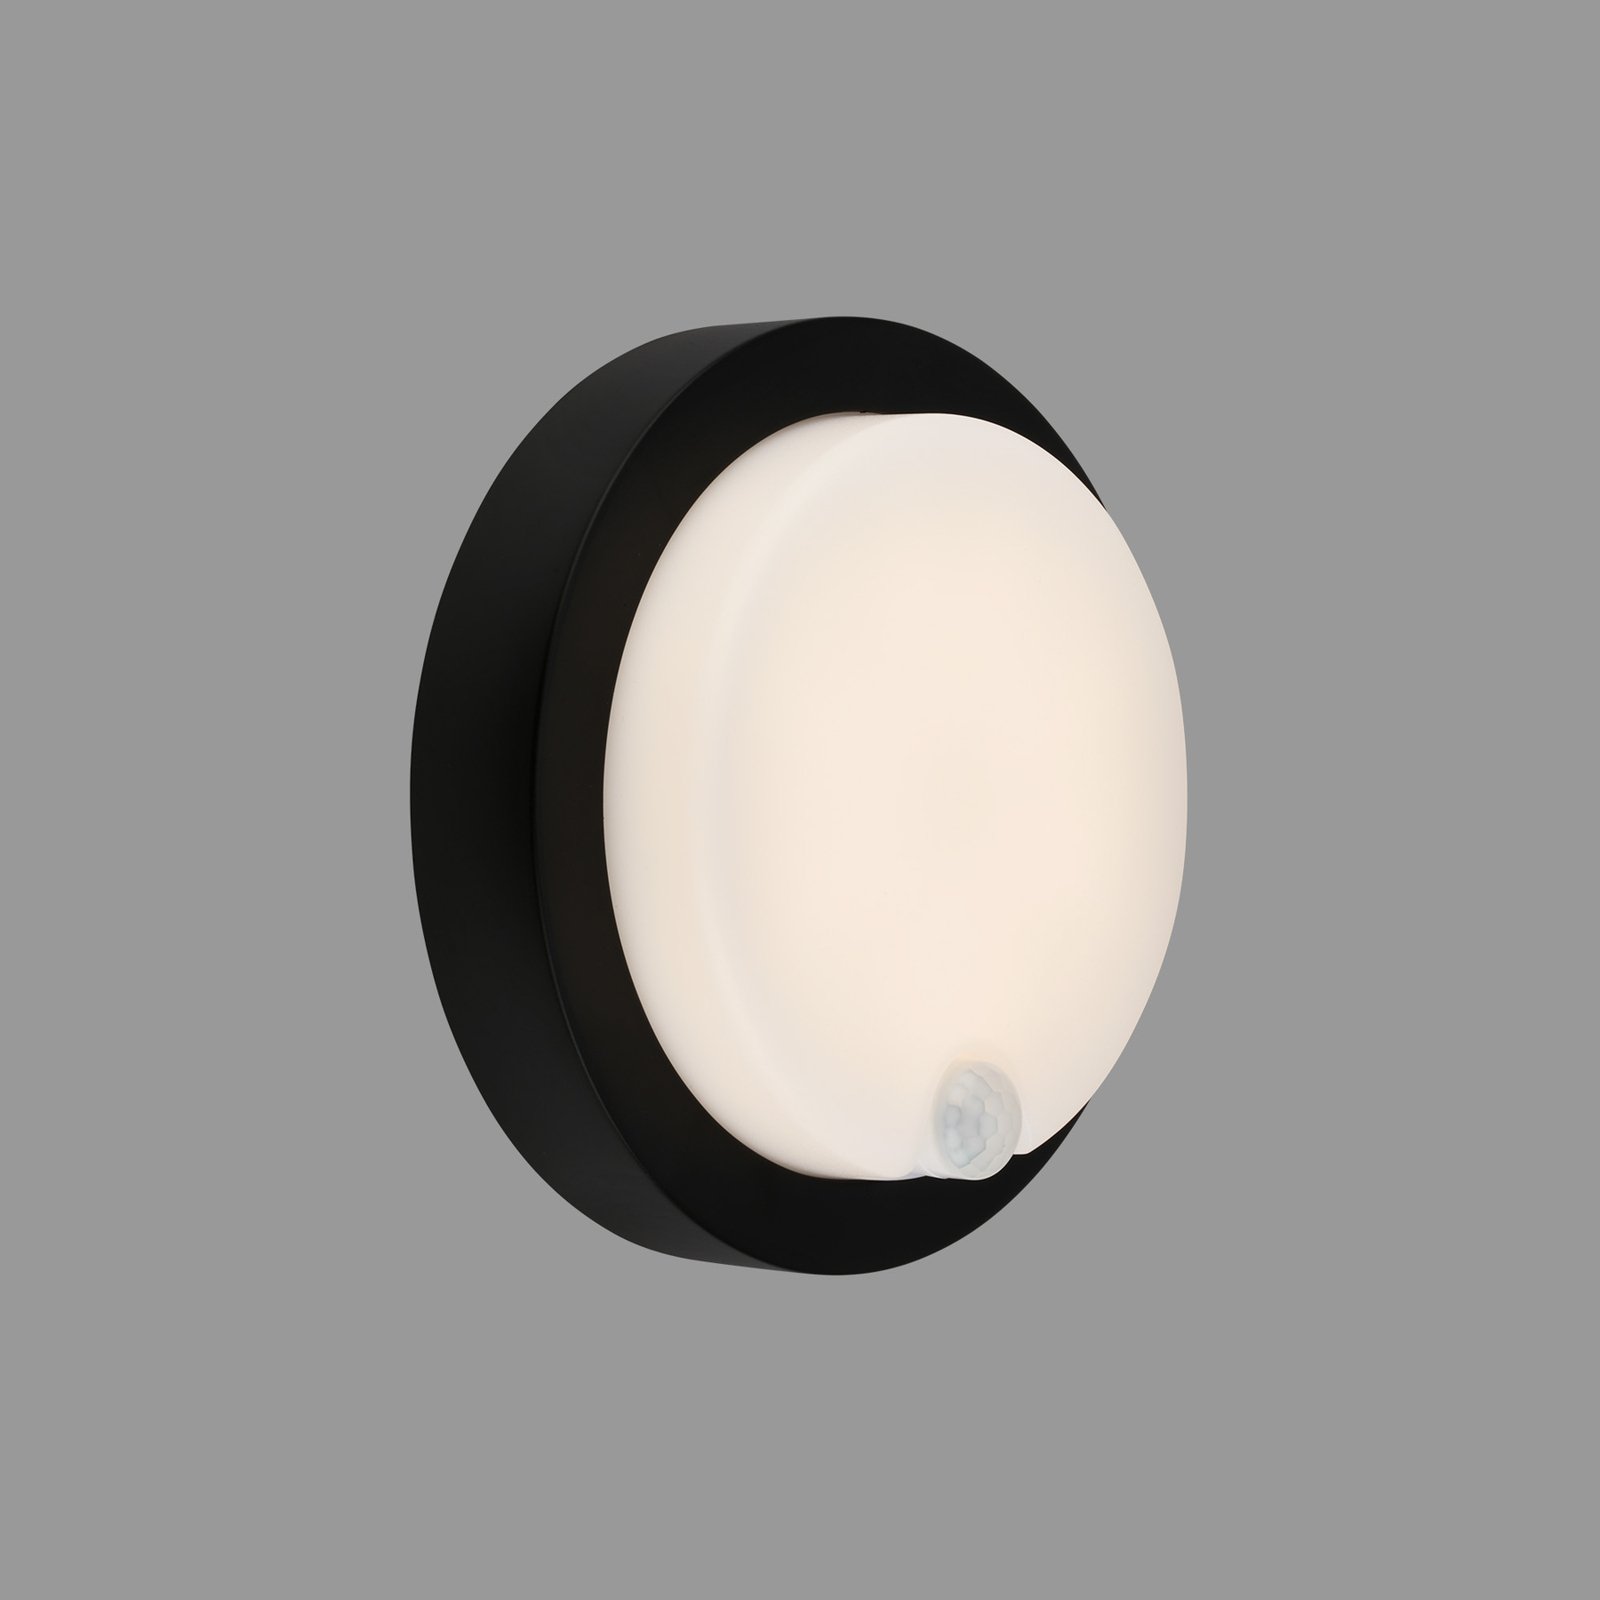 LED vanjska zidna svjetiljka 3765015 baterijski senzor, crna